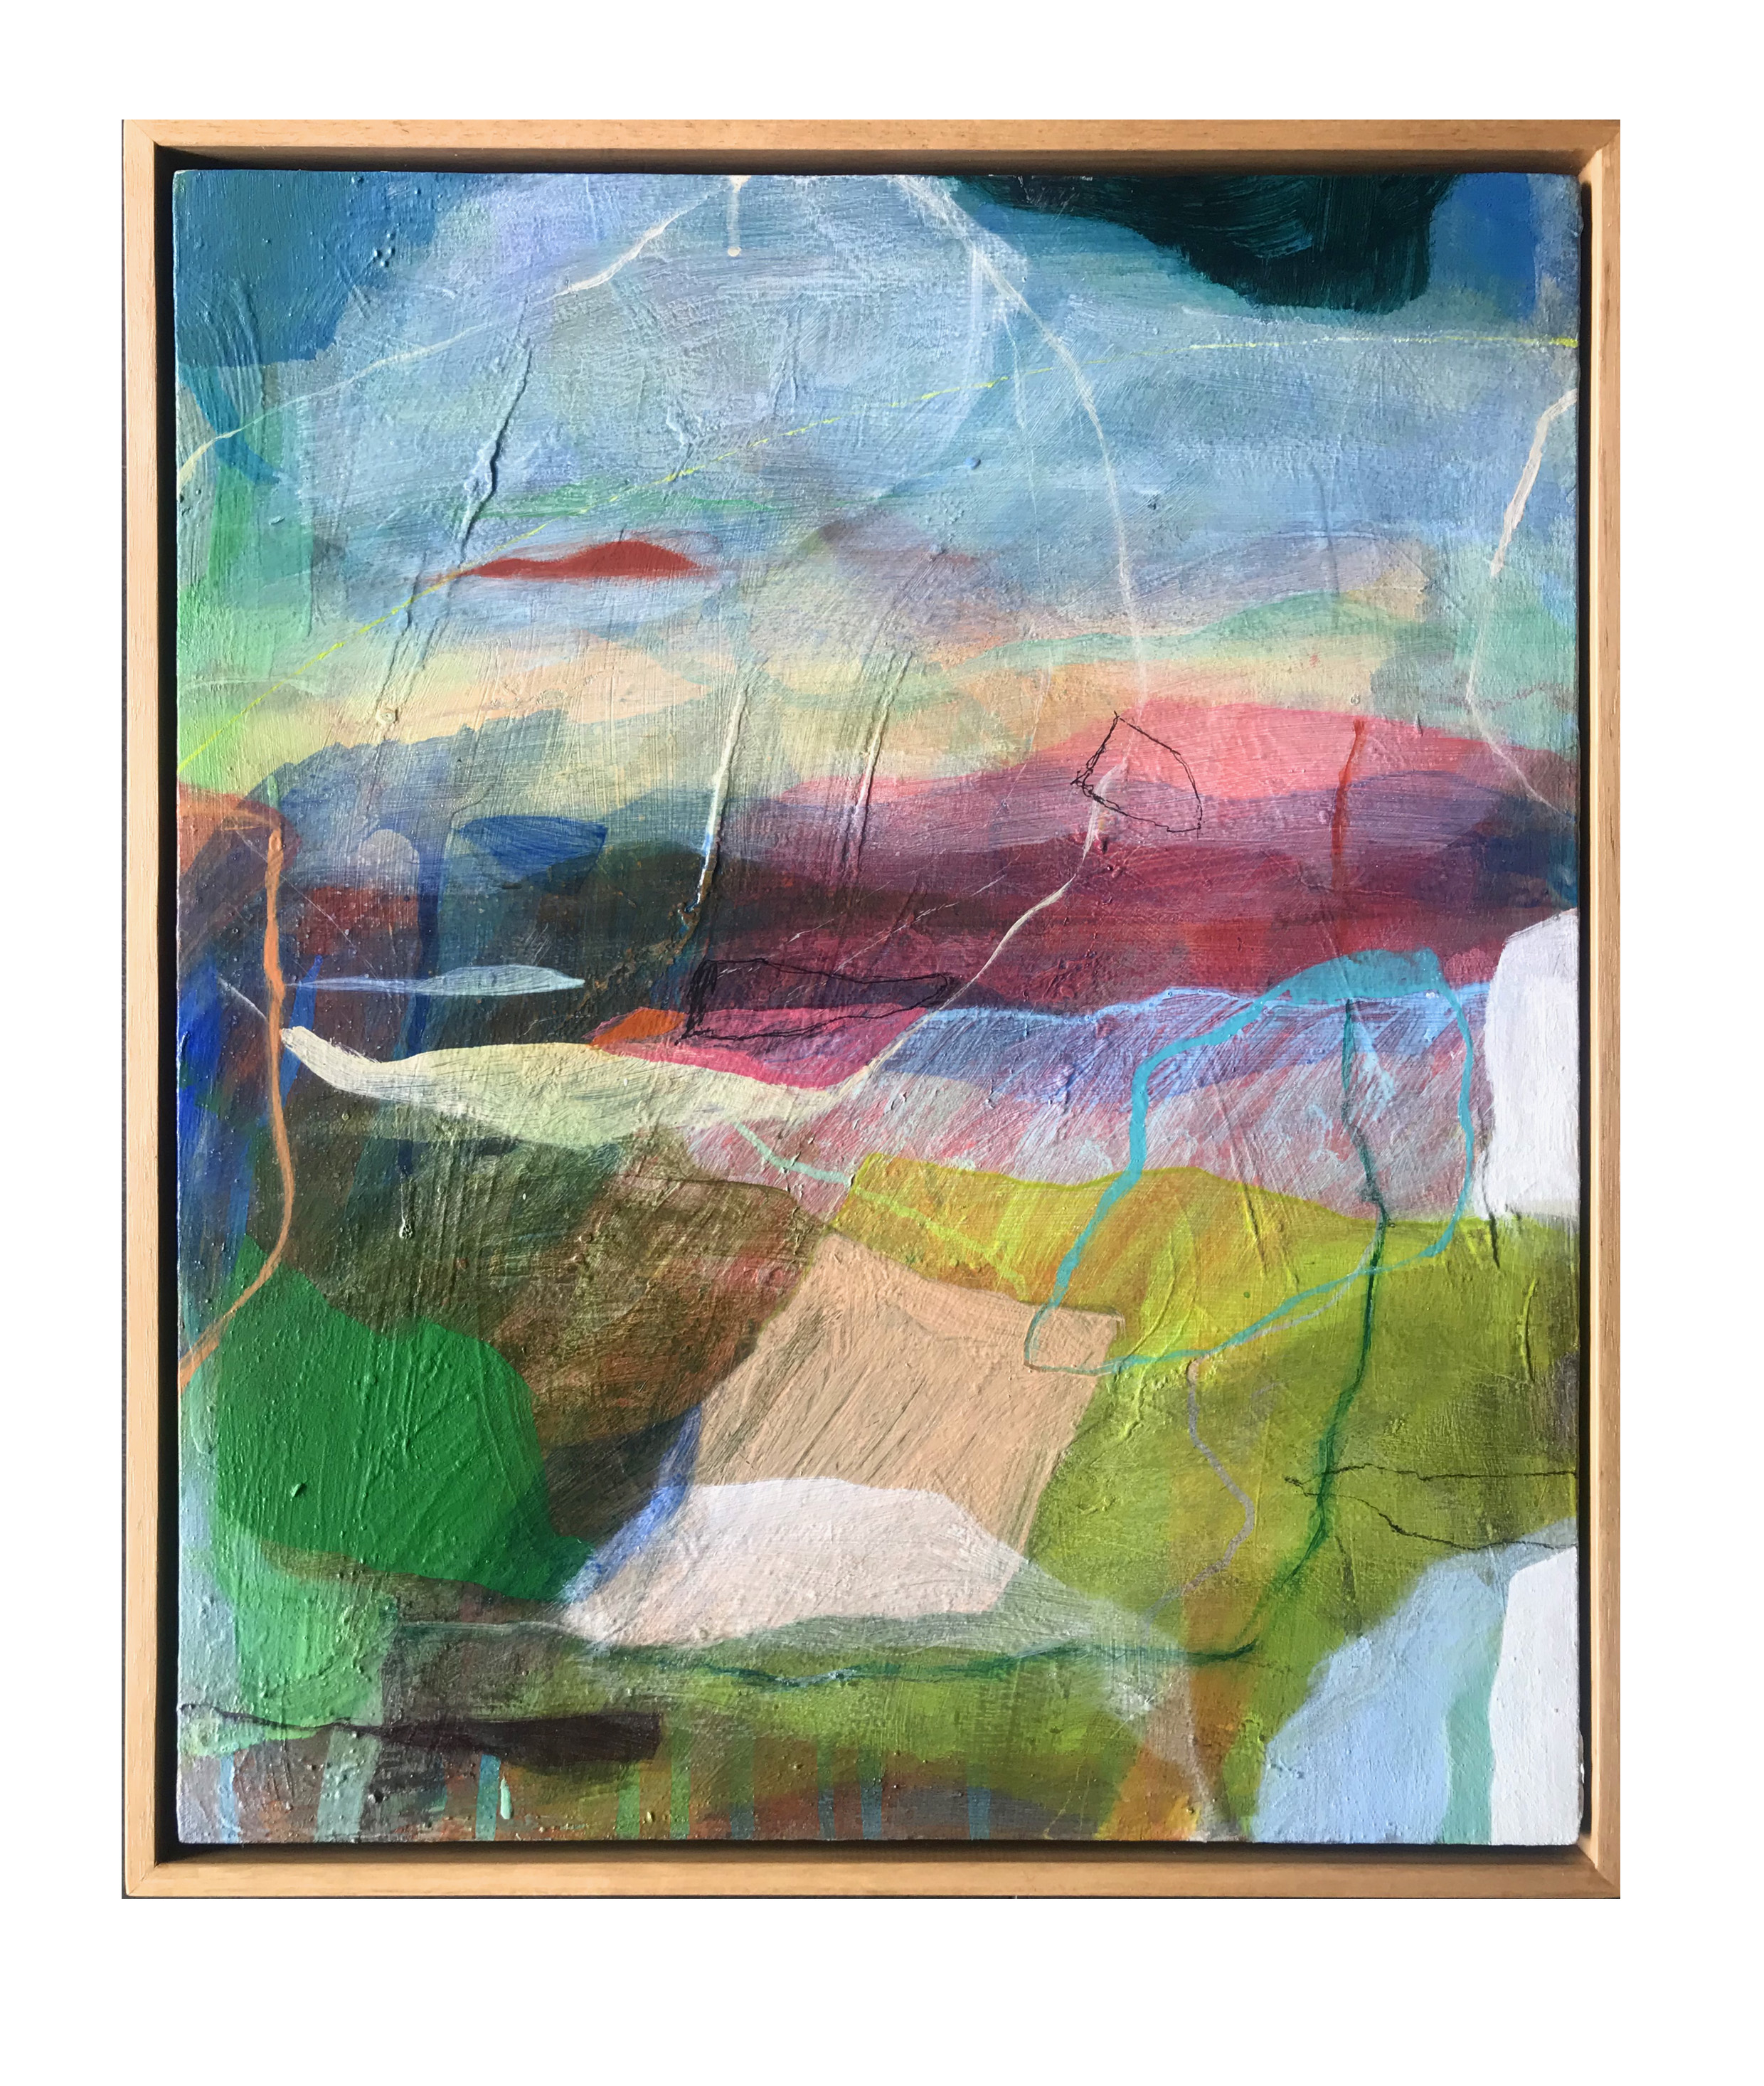 Mt Cordeaux for Sunrise, 2019, Acrylic on canvas, 64 x 54cm